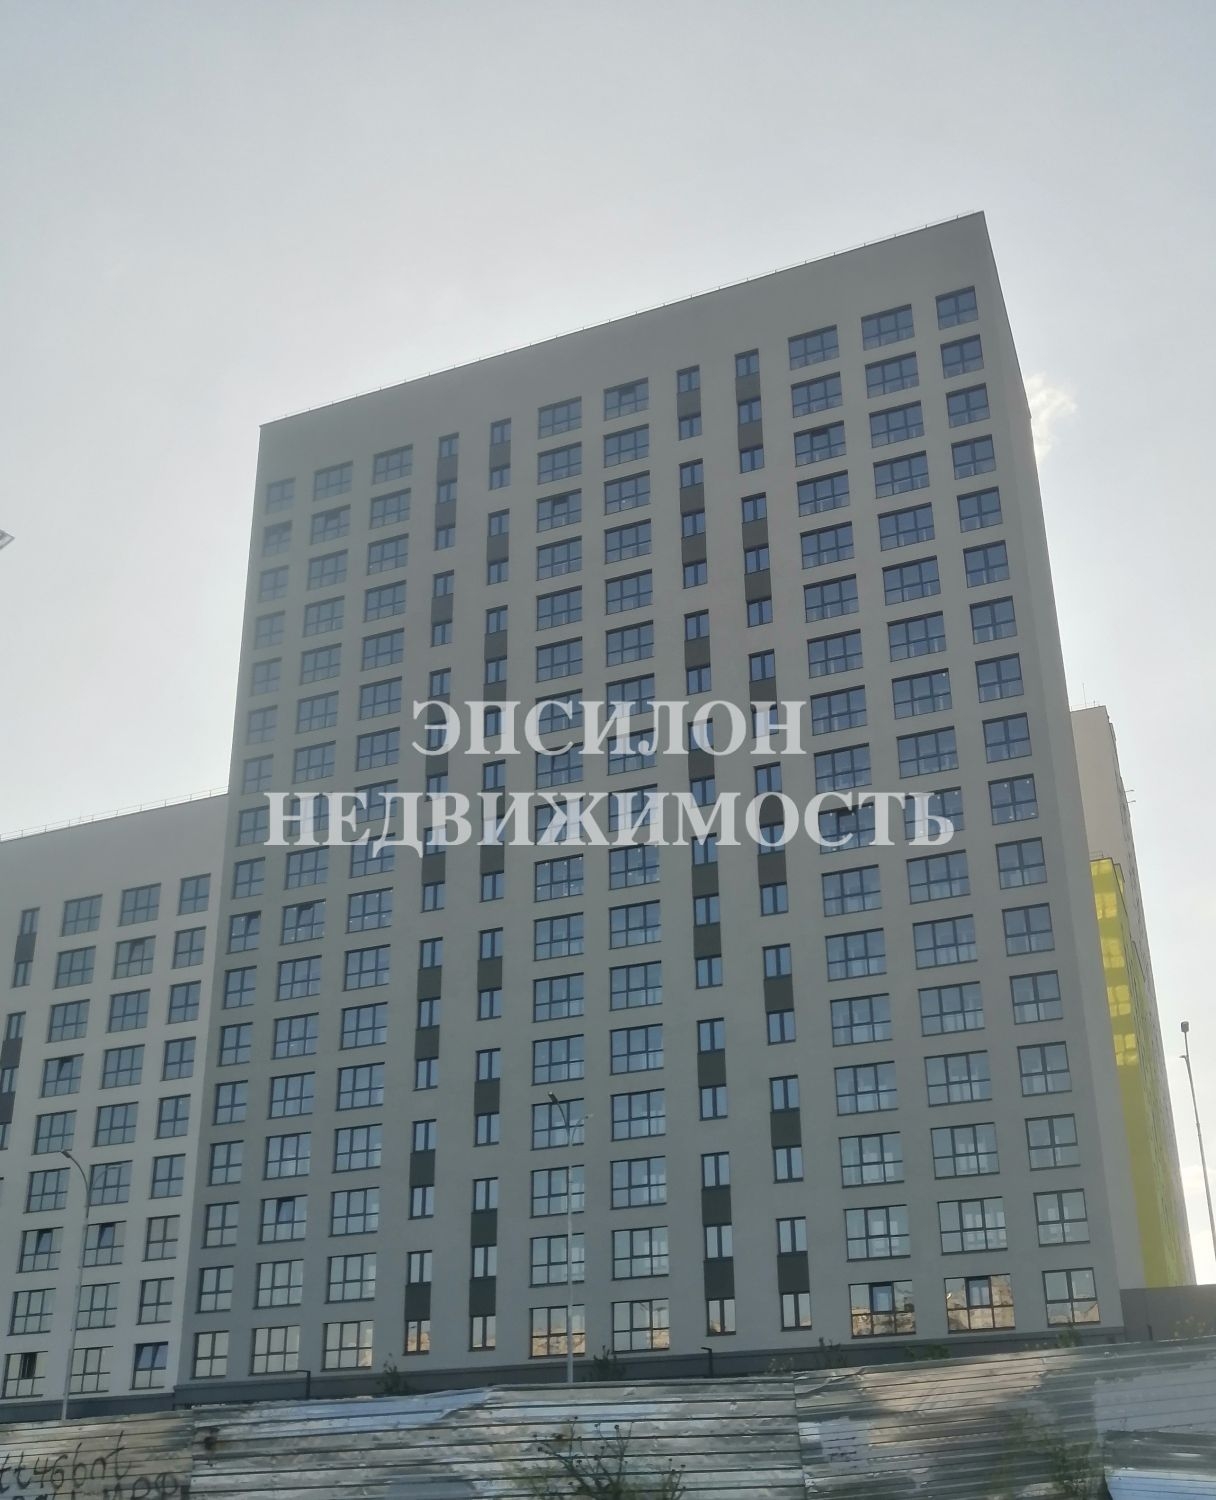 Продам 2-комнатную квартиру в городе Курск, на улице Энгельса, 115, 13-этаж 17-этажного Панель дома, площадь: 64/27/20 м2